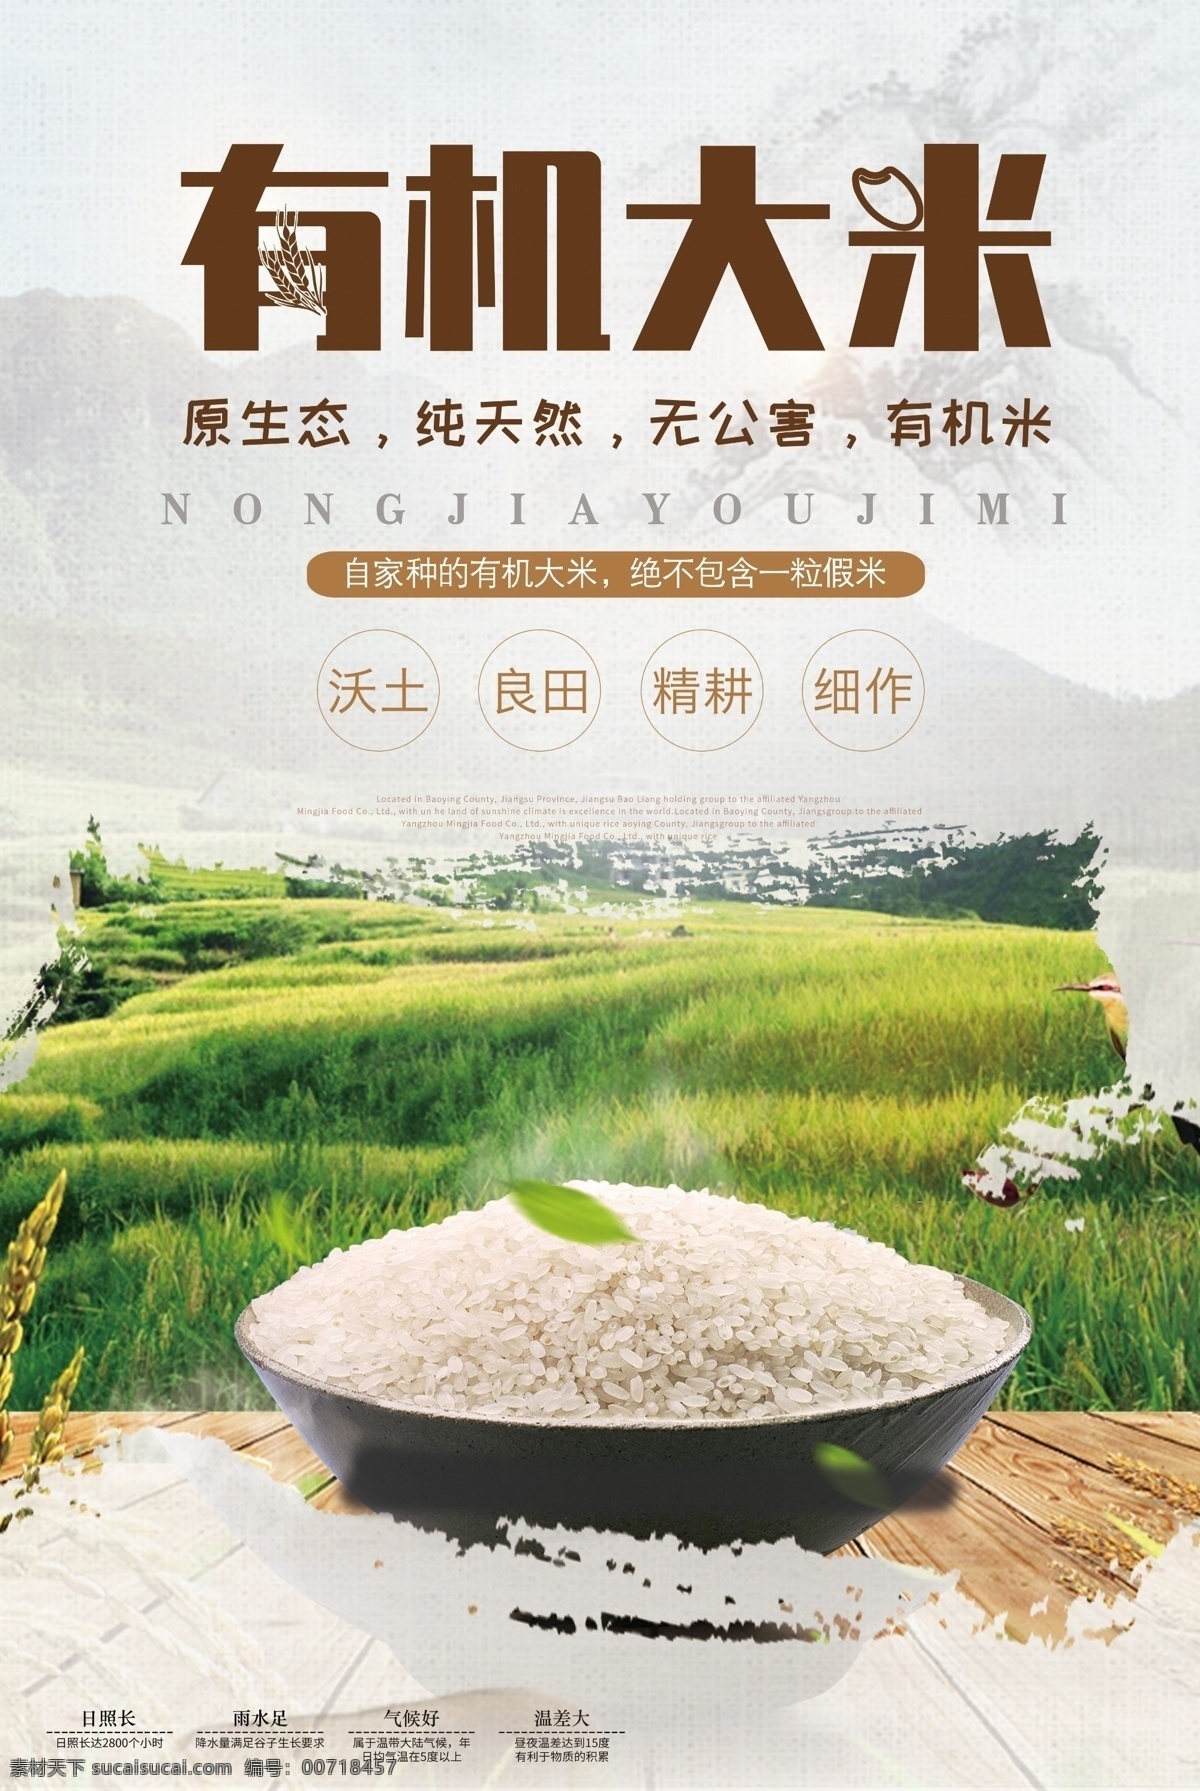 有机 大米 有机大米 五谷杂粮 优质大米 东北大米 精品大米 分层